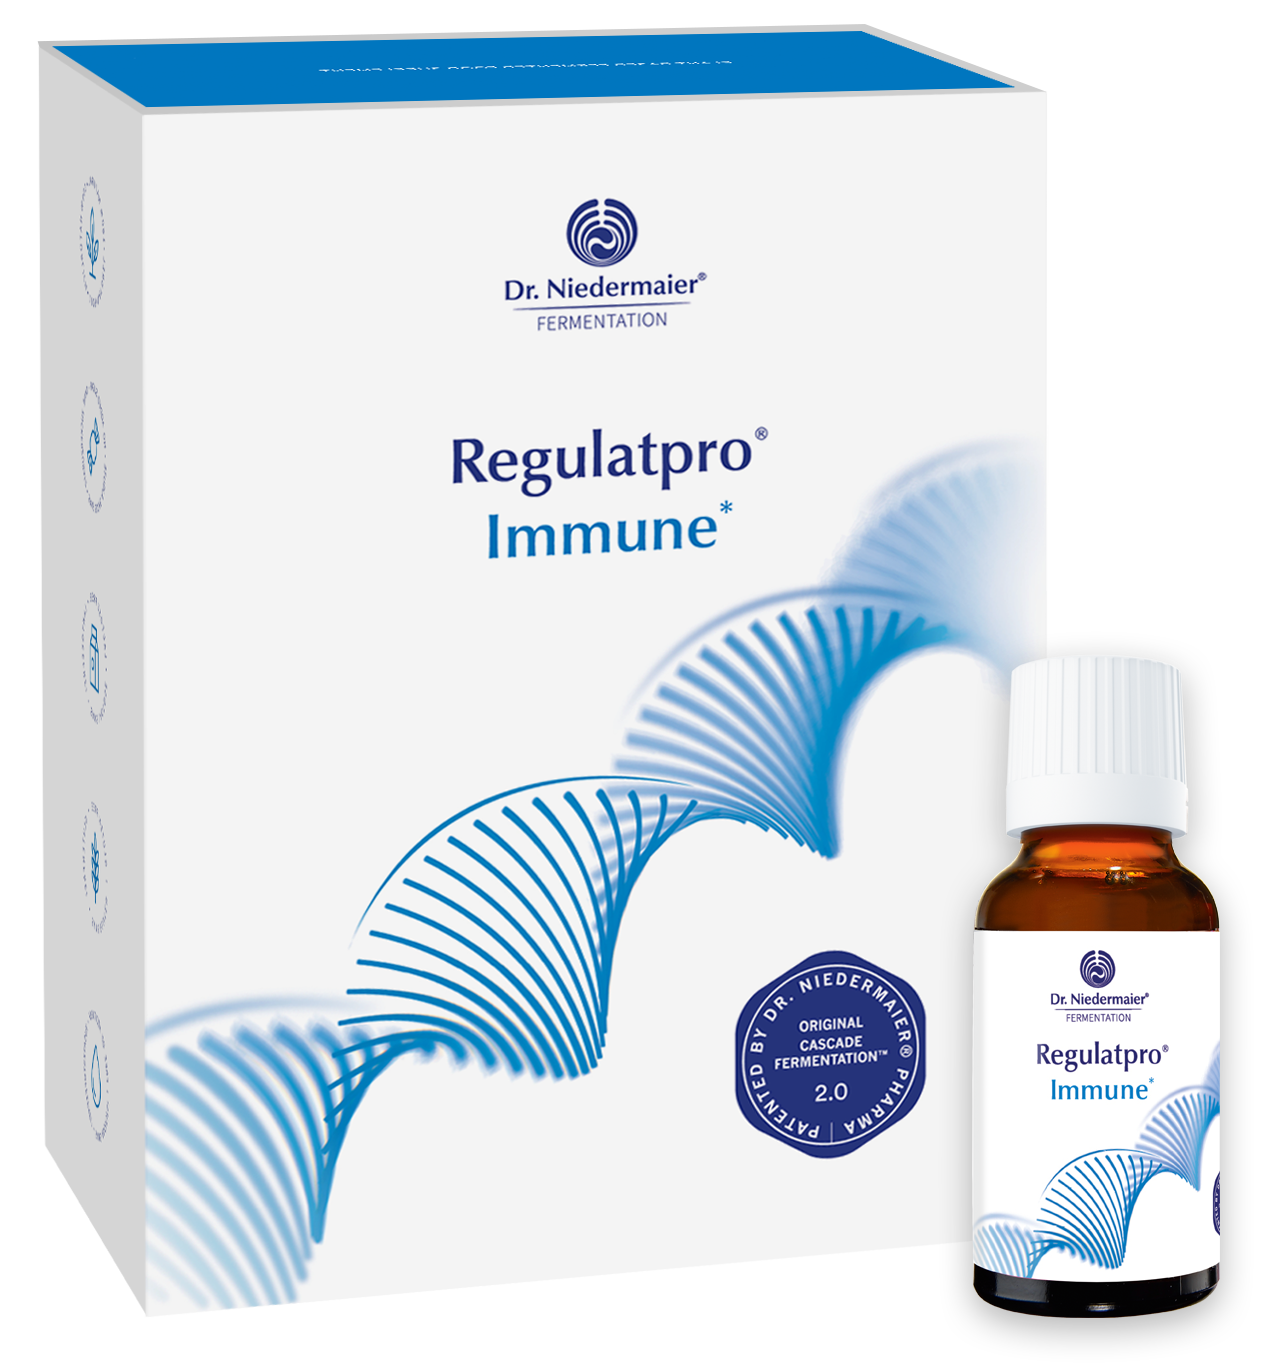 Dr. Niedermaier Regulatpro® "Immune" - Биологически активная добавка с витаминами и минералами, произведенная в соответствии с запатентованной технологией каскадной ферментации 2.0., 20x20 мл.